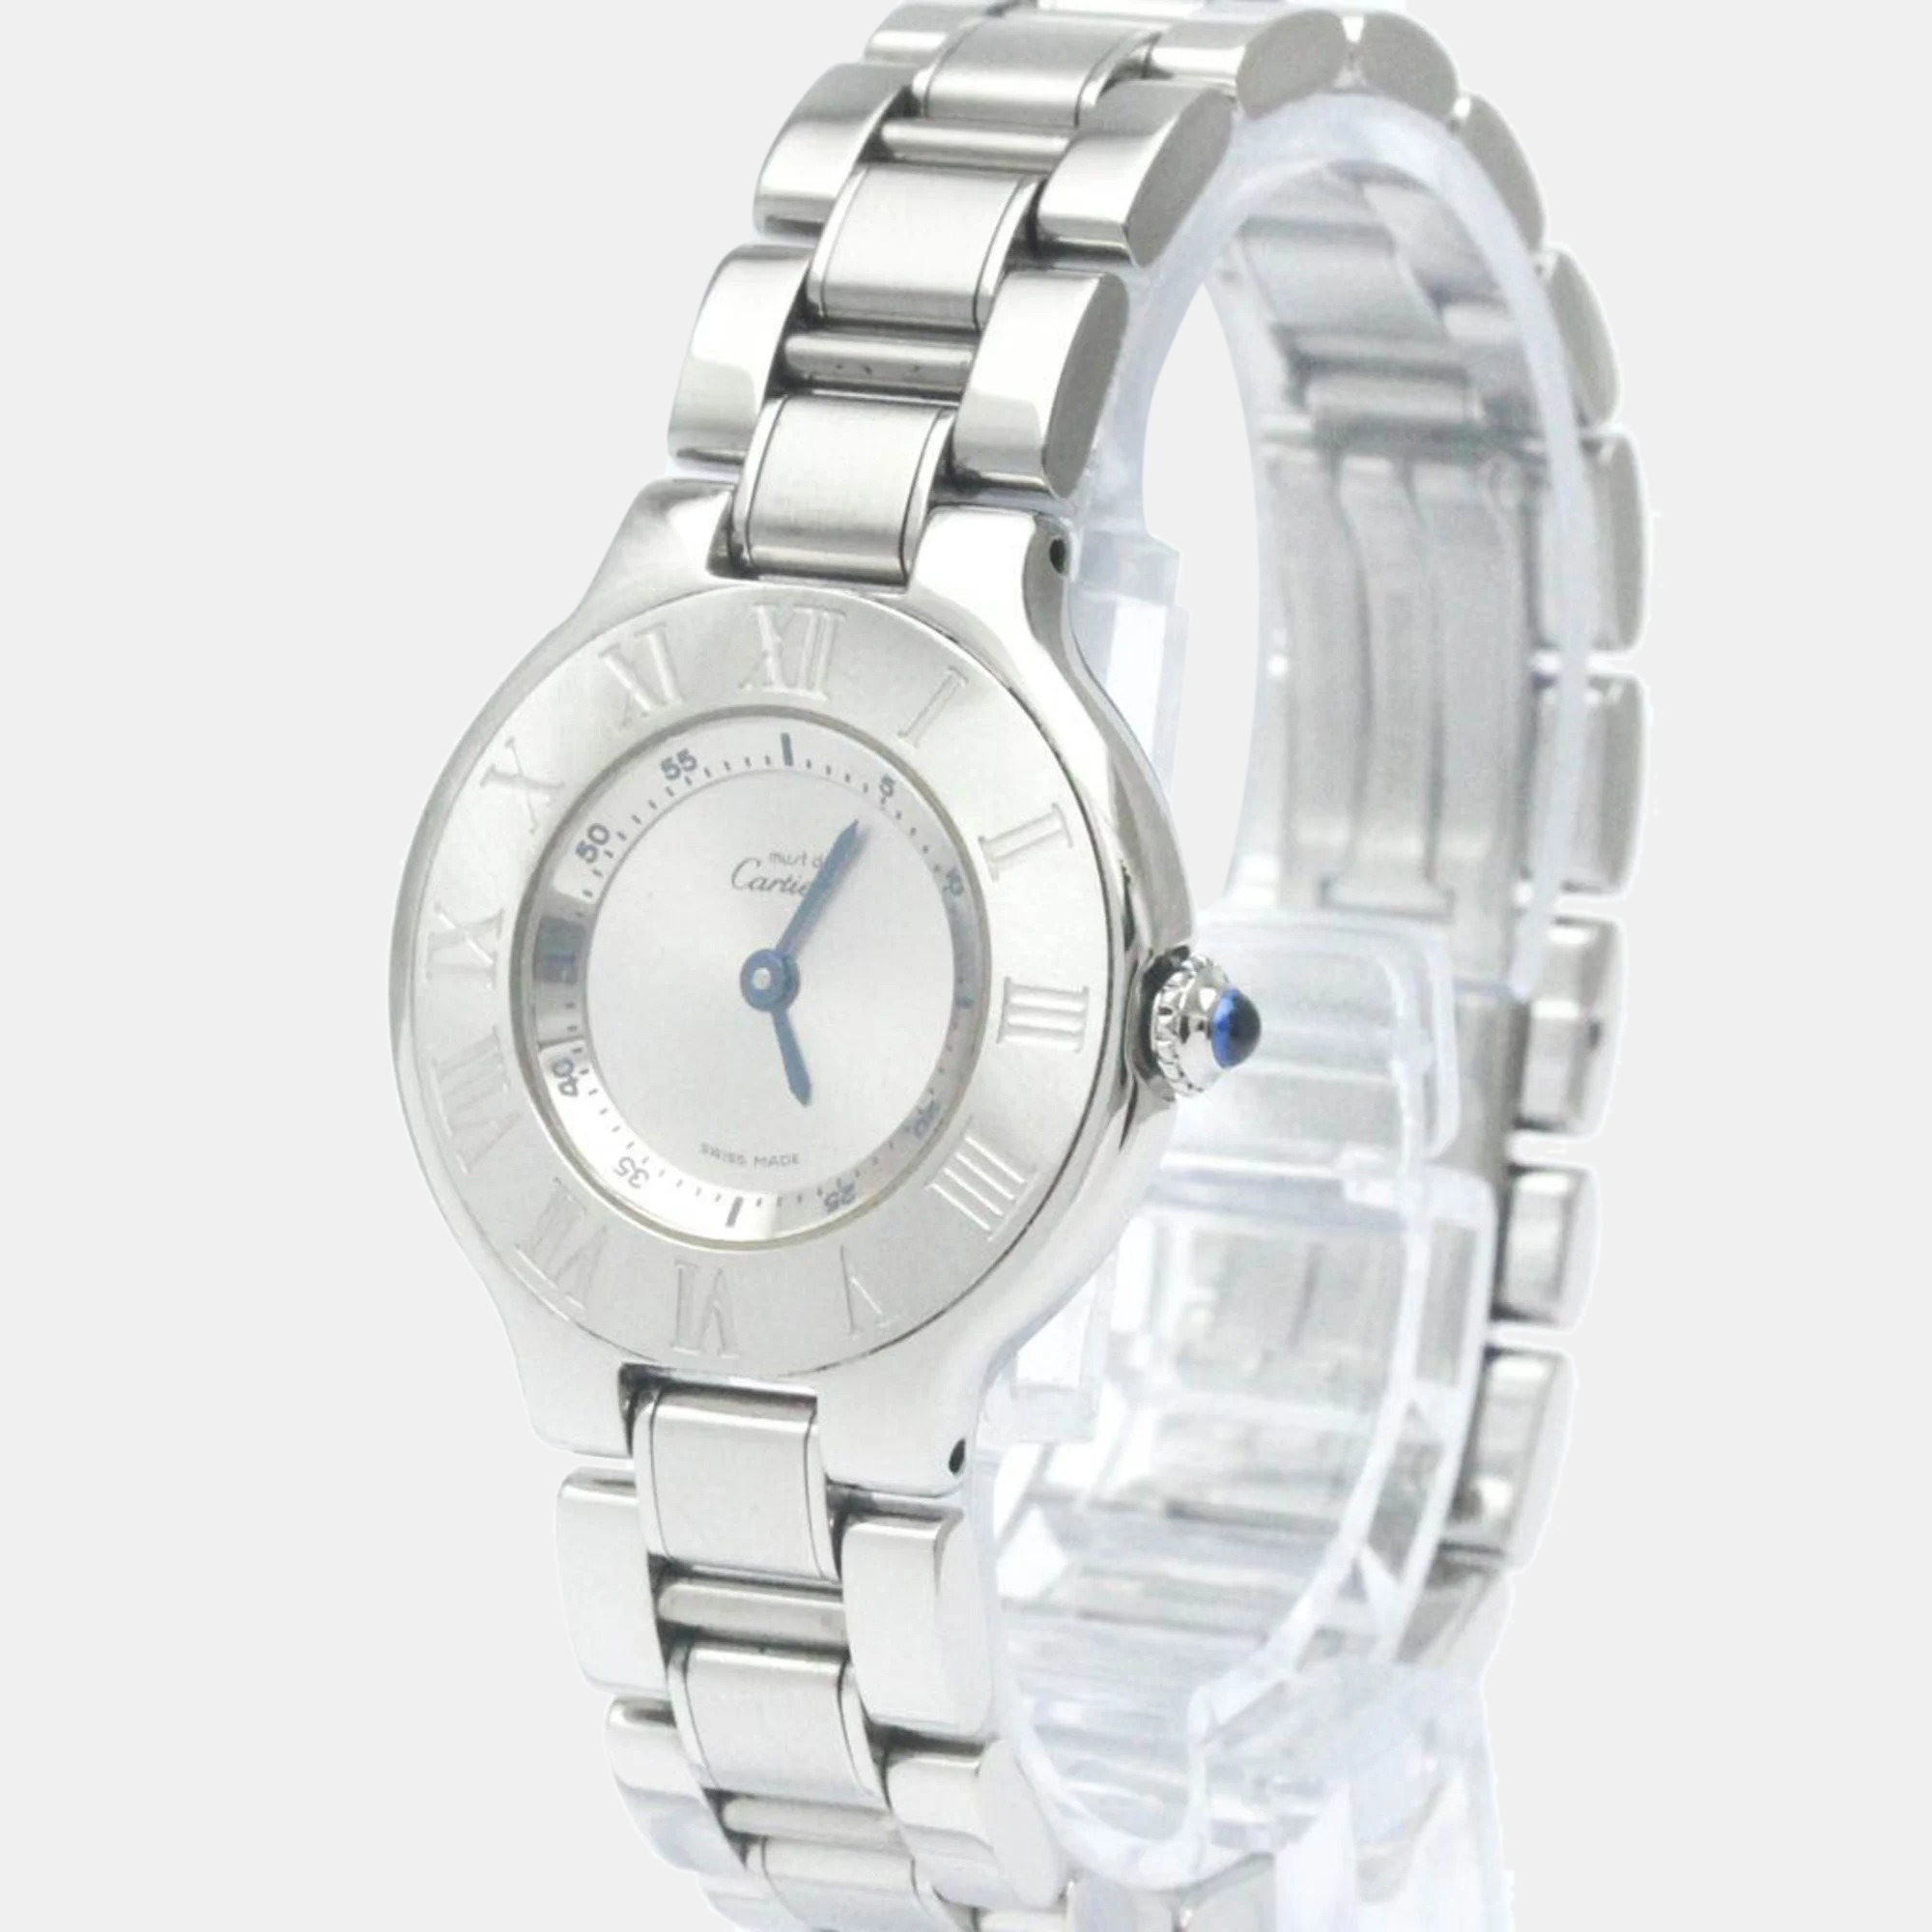 

Cartier Silver Stainless Steel Must 21 de Cartier W10109T2 Quartz Women's Wristwatch 28 mm